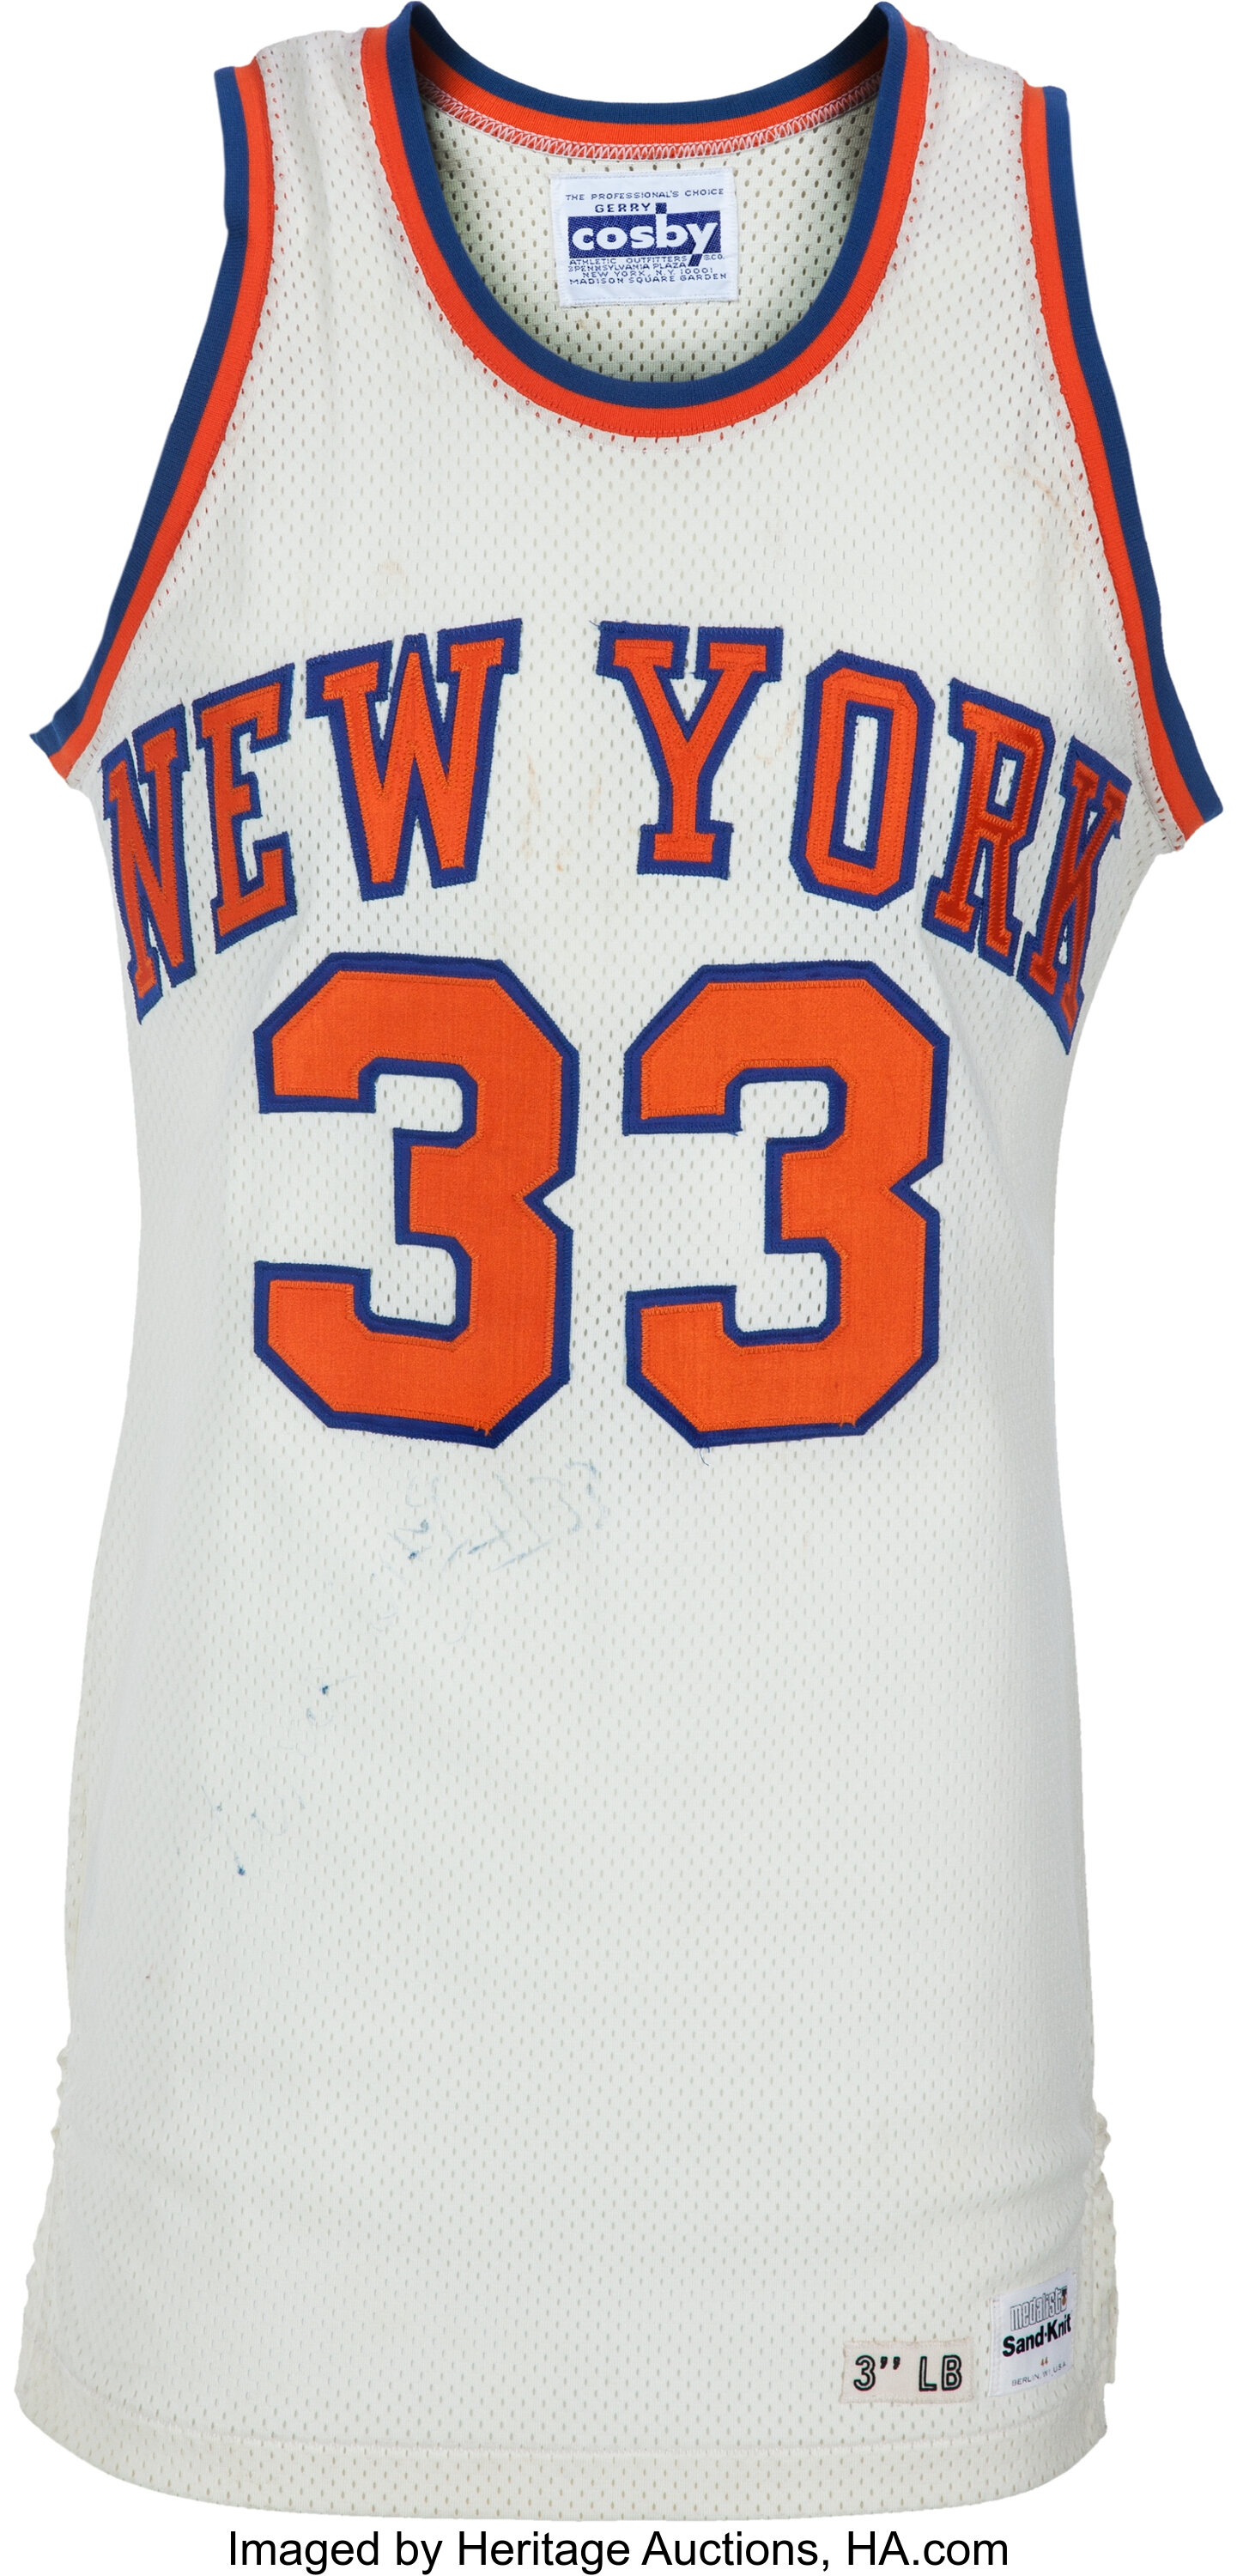 New York Knicks choose Sportfive to find new jersey patch sponsor -  SportsPro